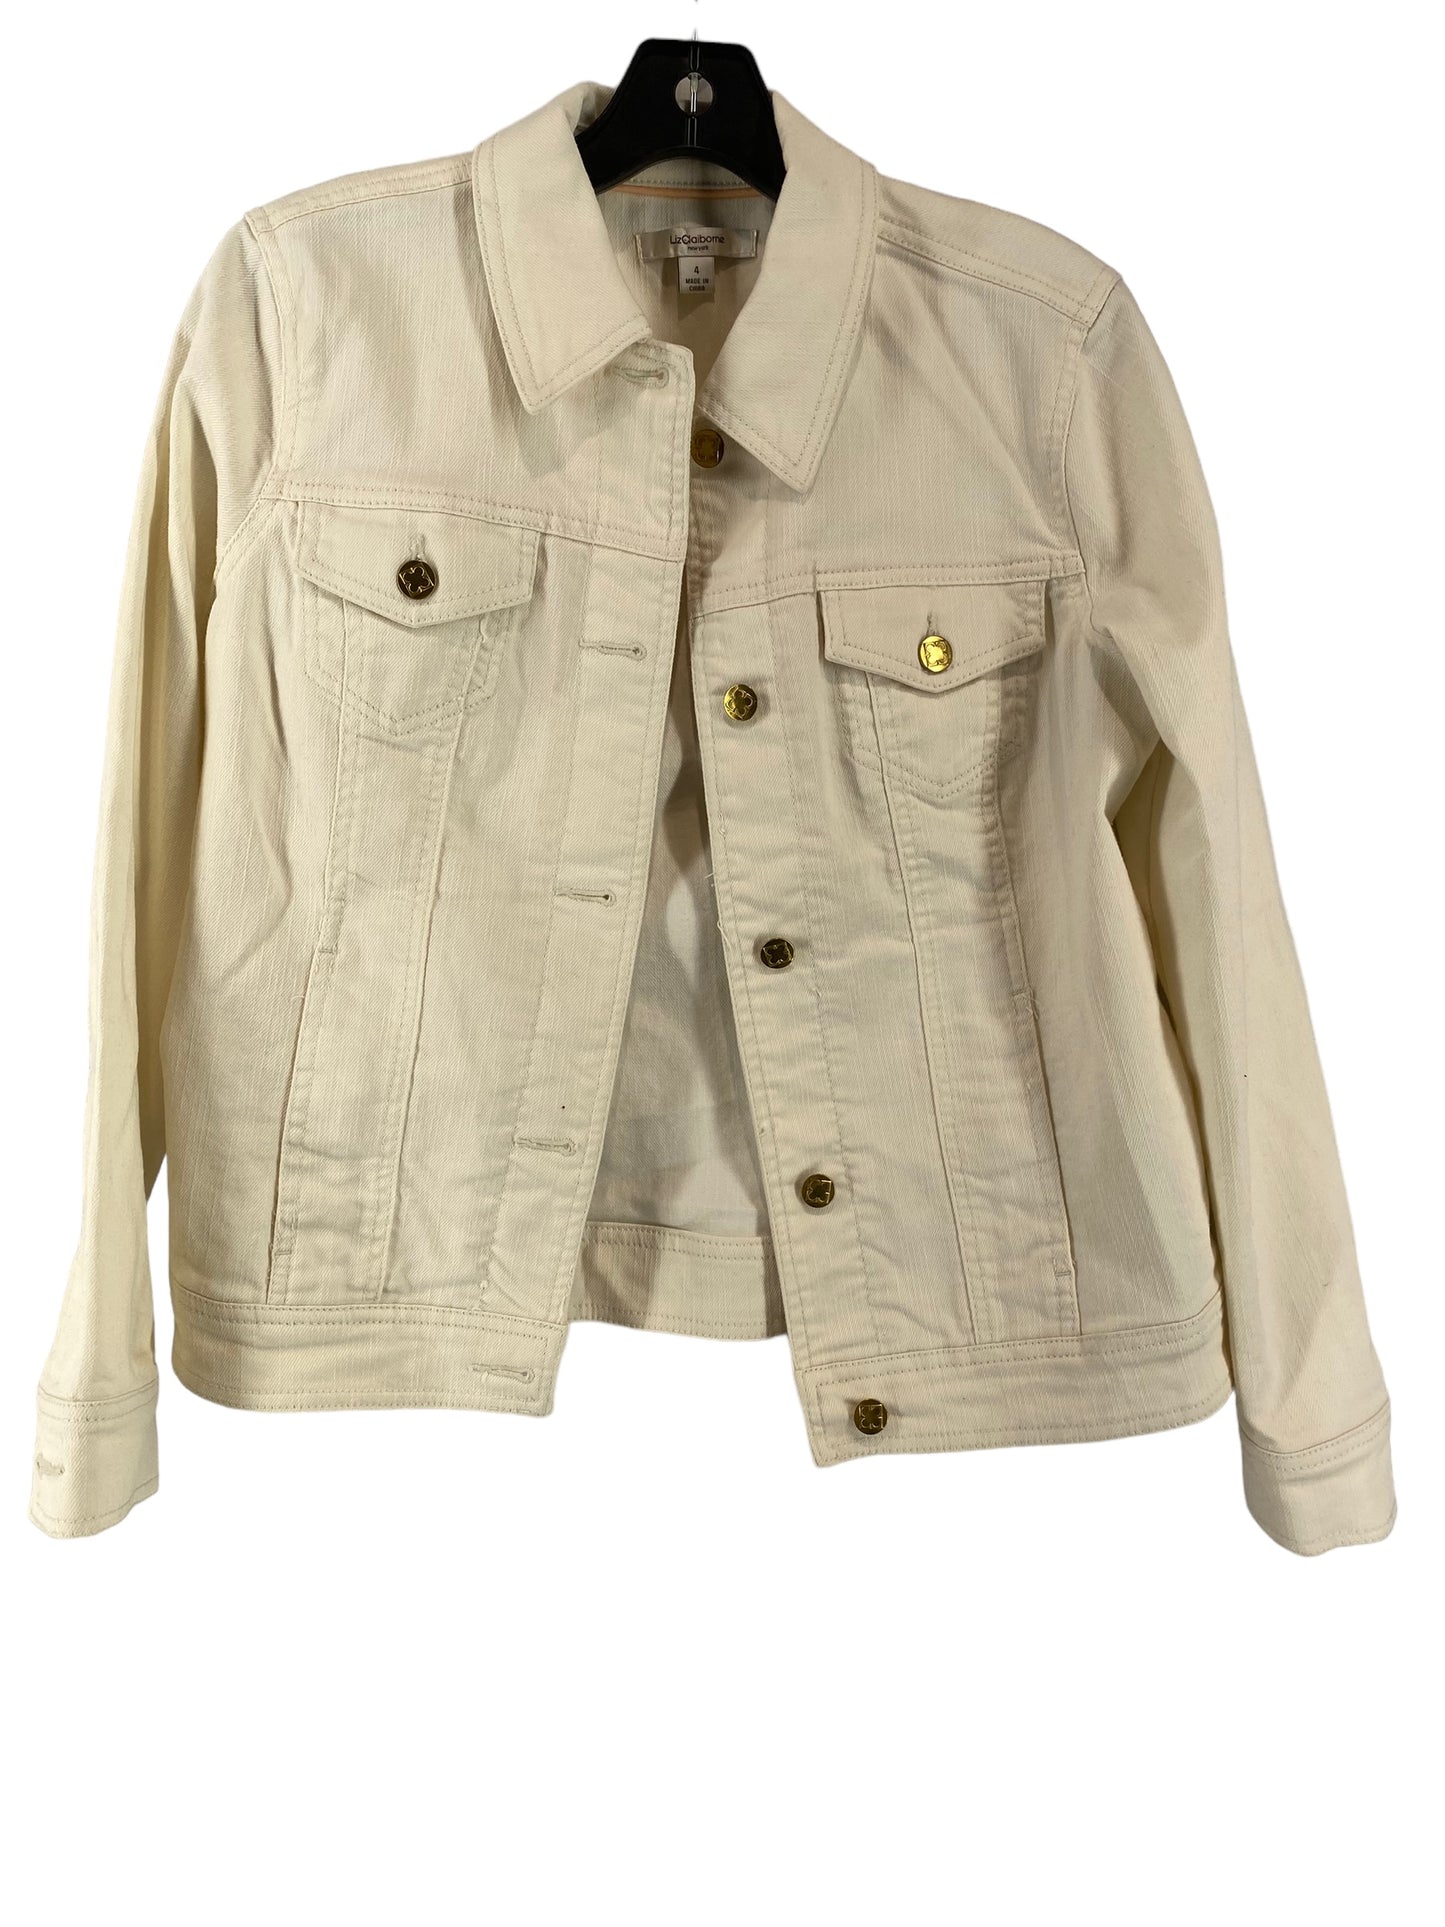 Jacket Denim By Liz Claiborne  Size: 4